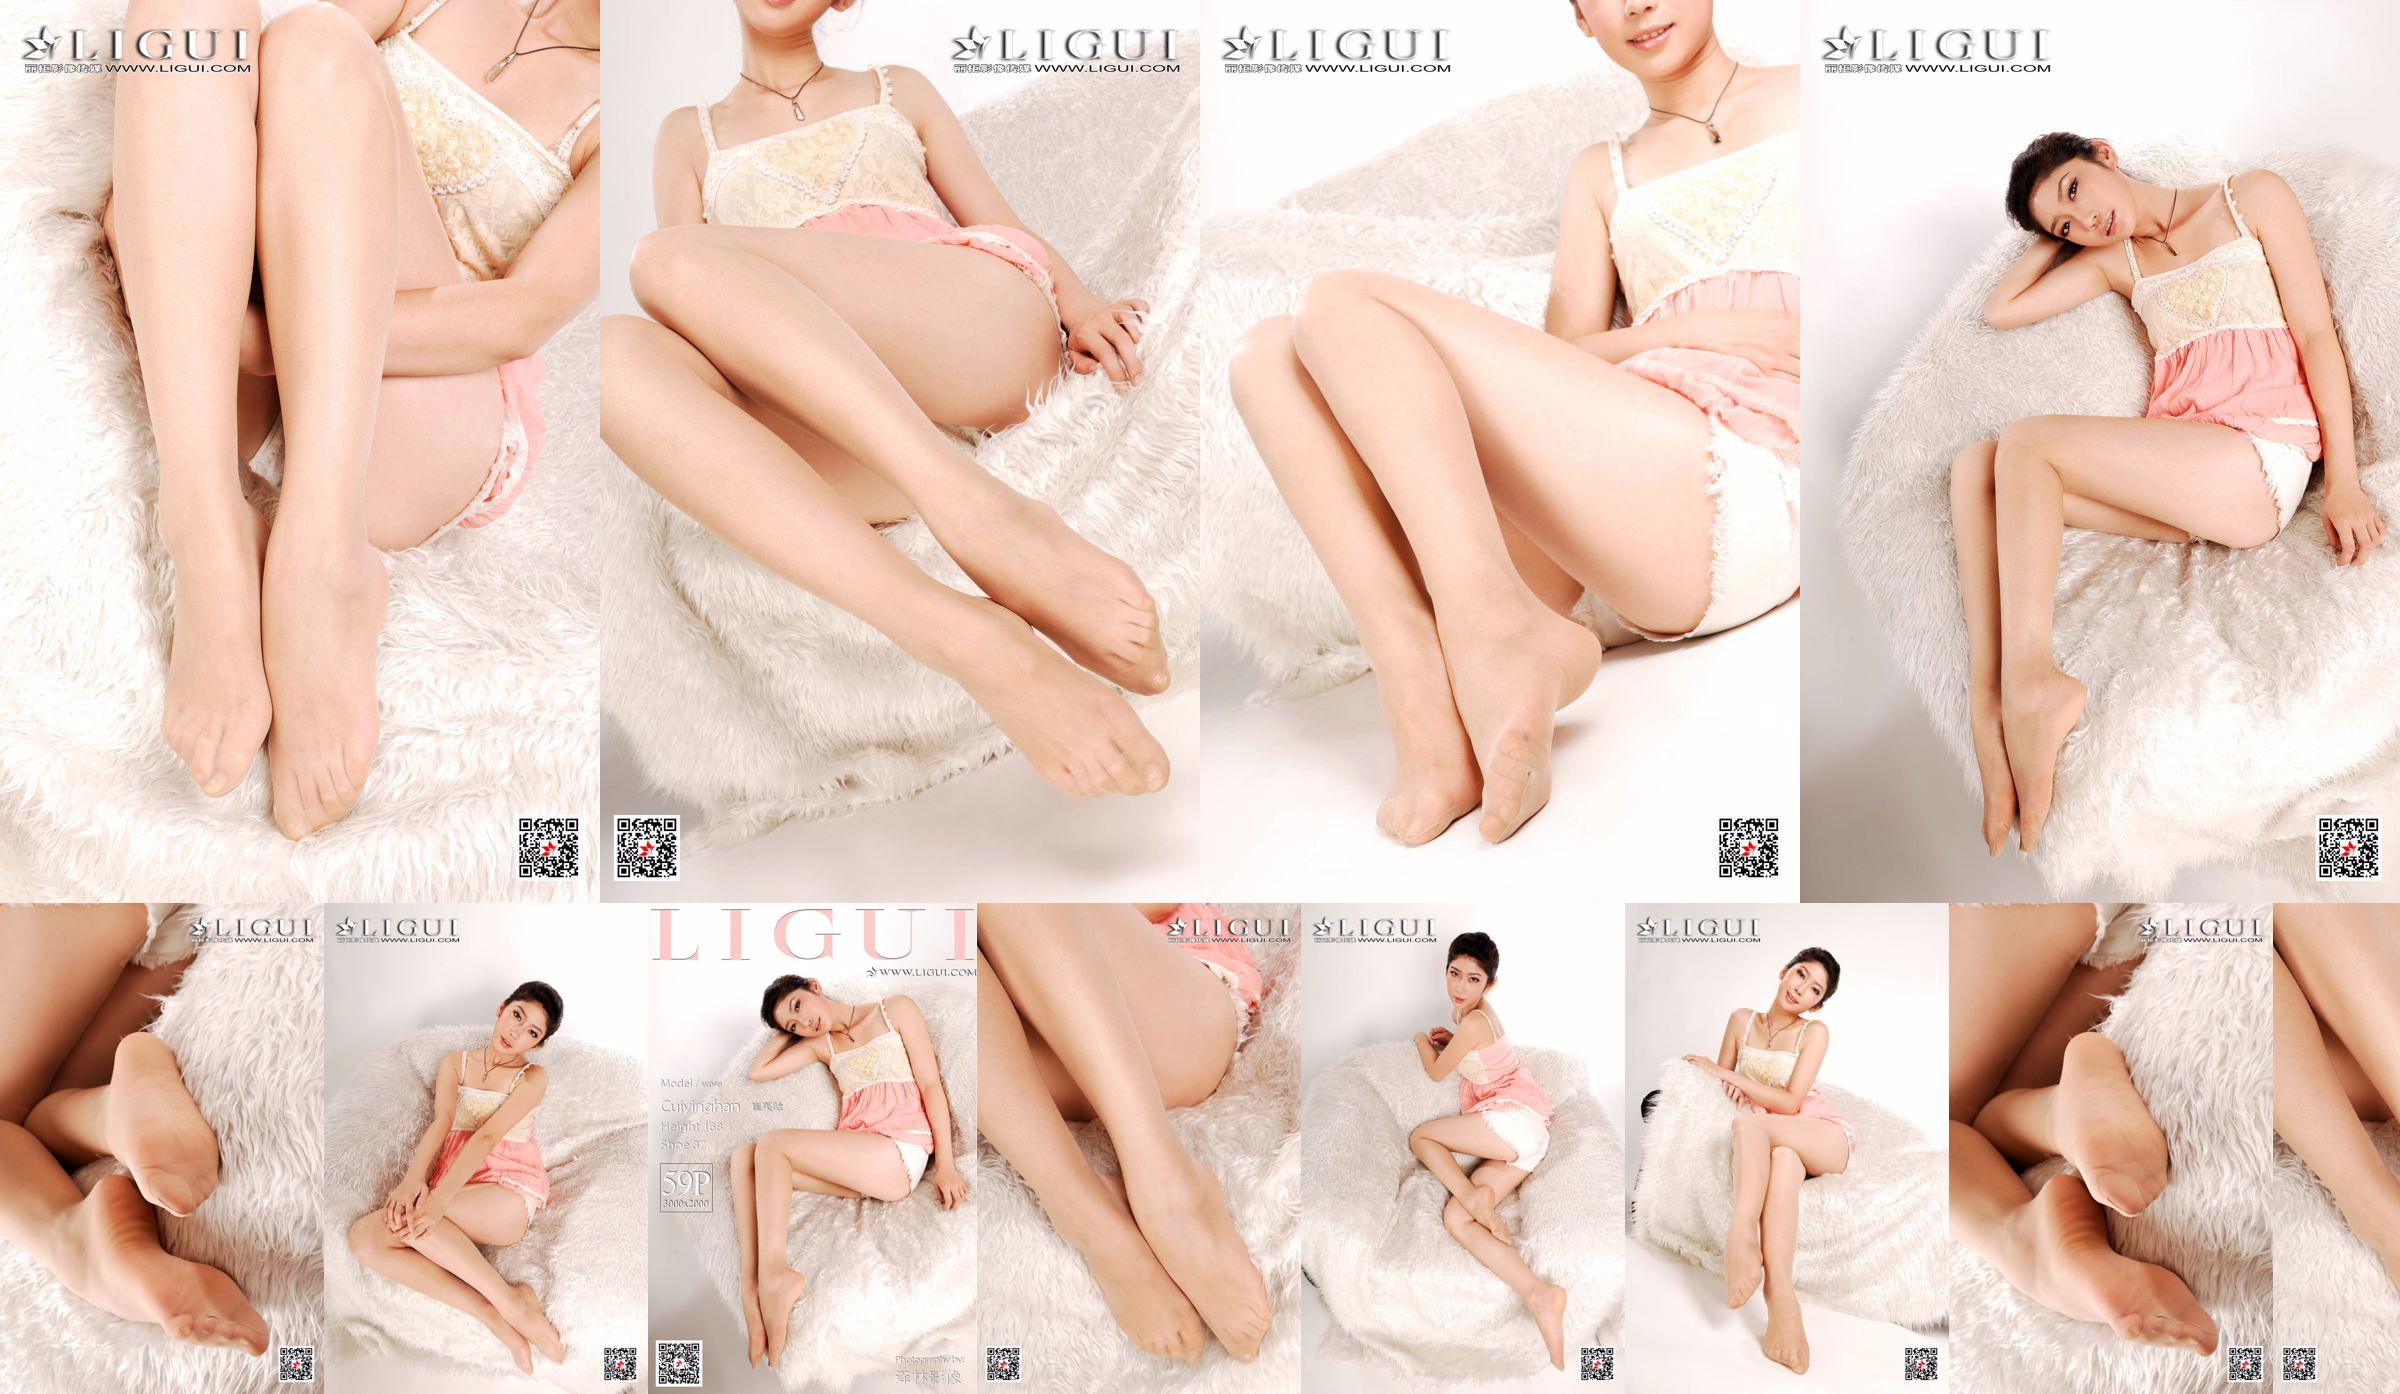 Modelo Cui Yinghan "Ross and Jade Foot" [Ligui Ligui] No.47cb01 Página 1